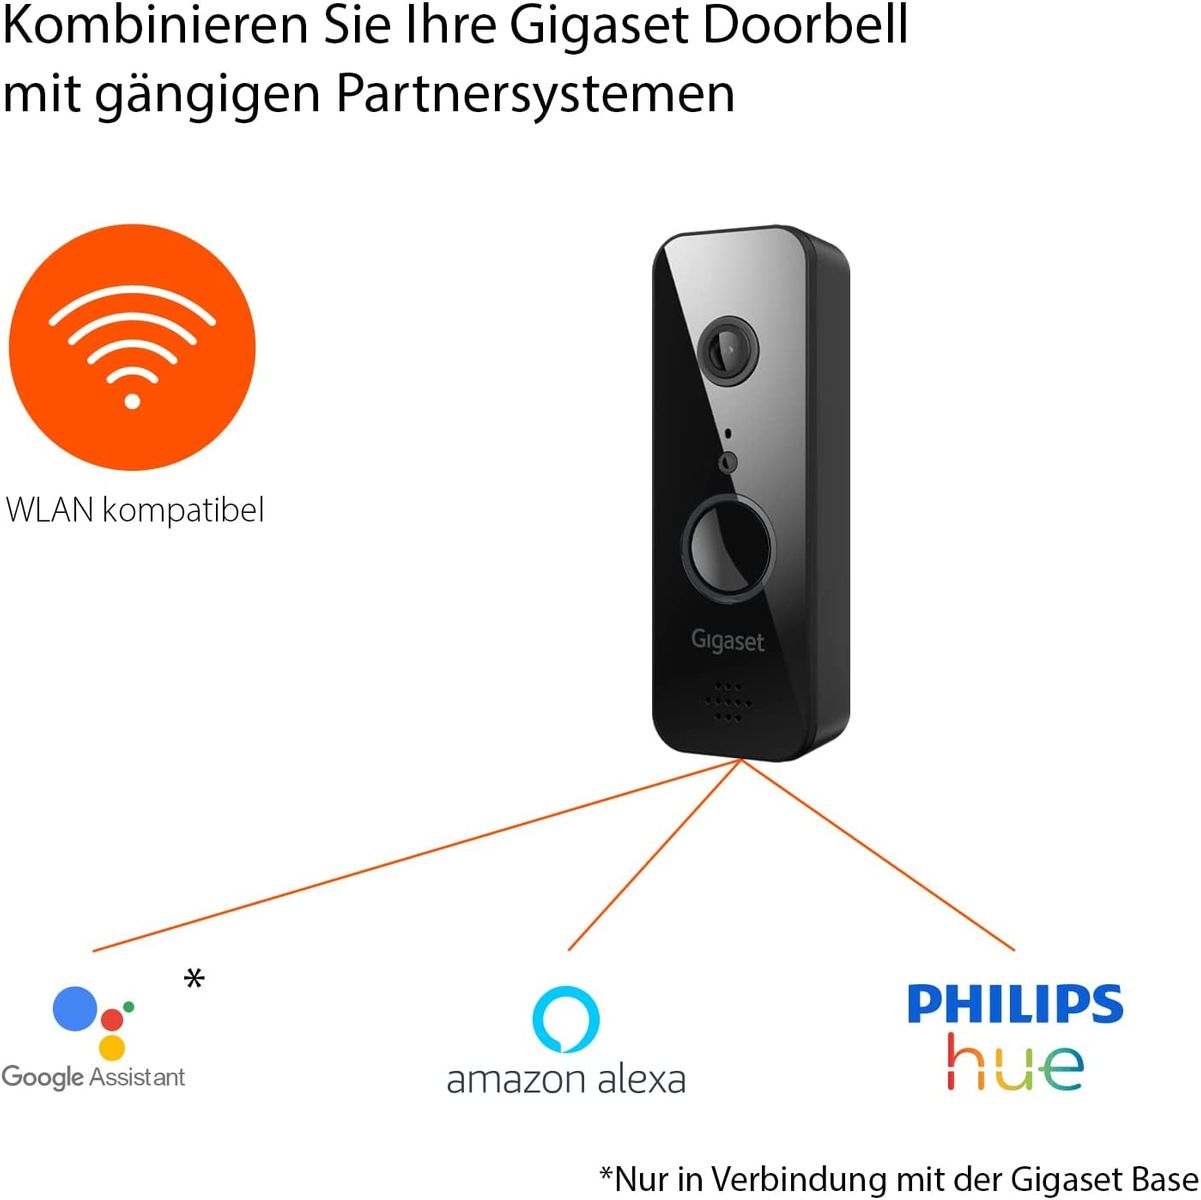 Gigaset Doorbell - Smart-Home Türklingel zur Überwachung der Eingangstür mit Echtzeit-Videoübertragung in Full HD, Push-Nachricht bei Bewegungen und Klingeln - App-Steuerung, schwarz Smart Doorbell ONE X